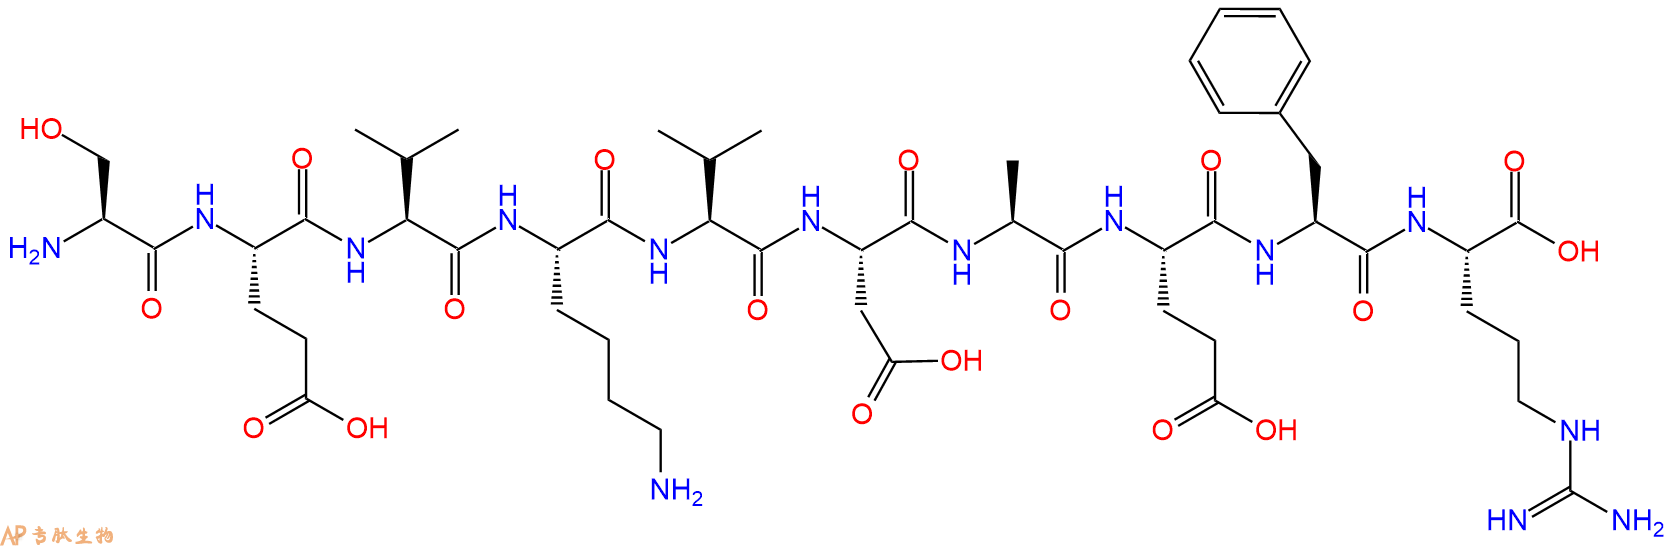 专肽生物产品淀粉肽(Val671)-AMYLOID β/A4 Protein PRECURSOR770 (667252256-43-2